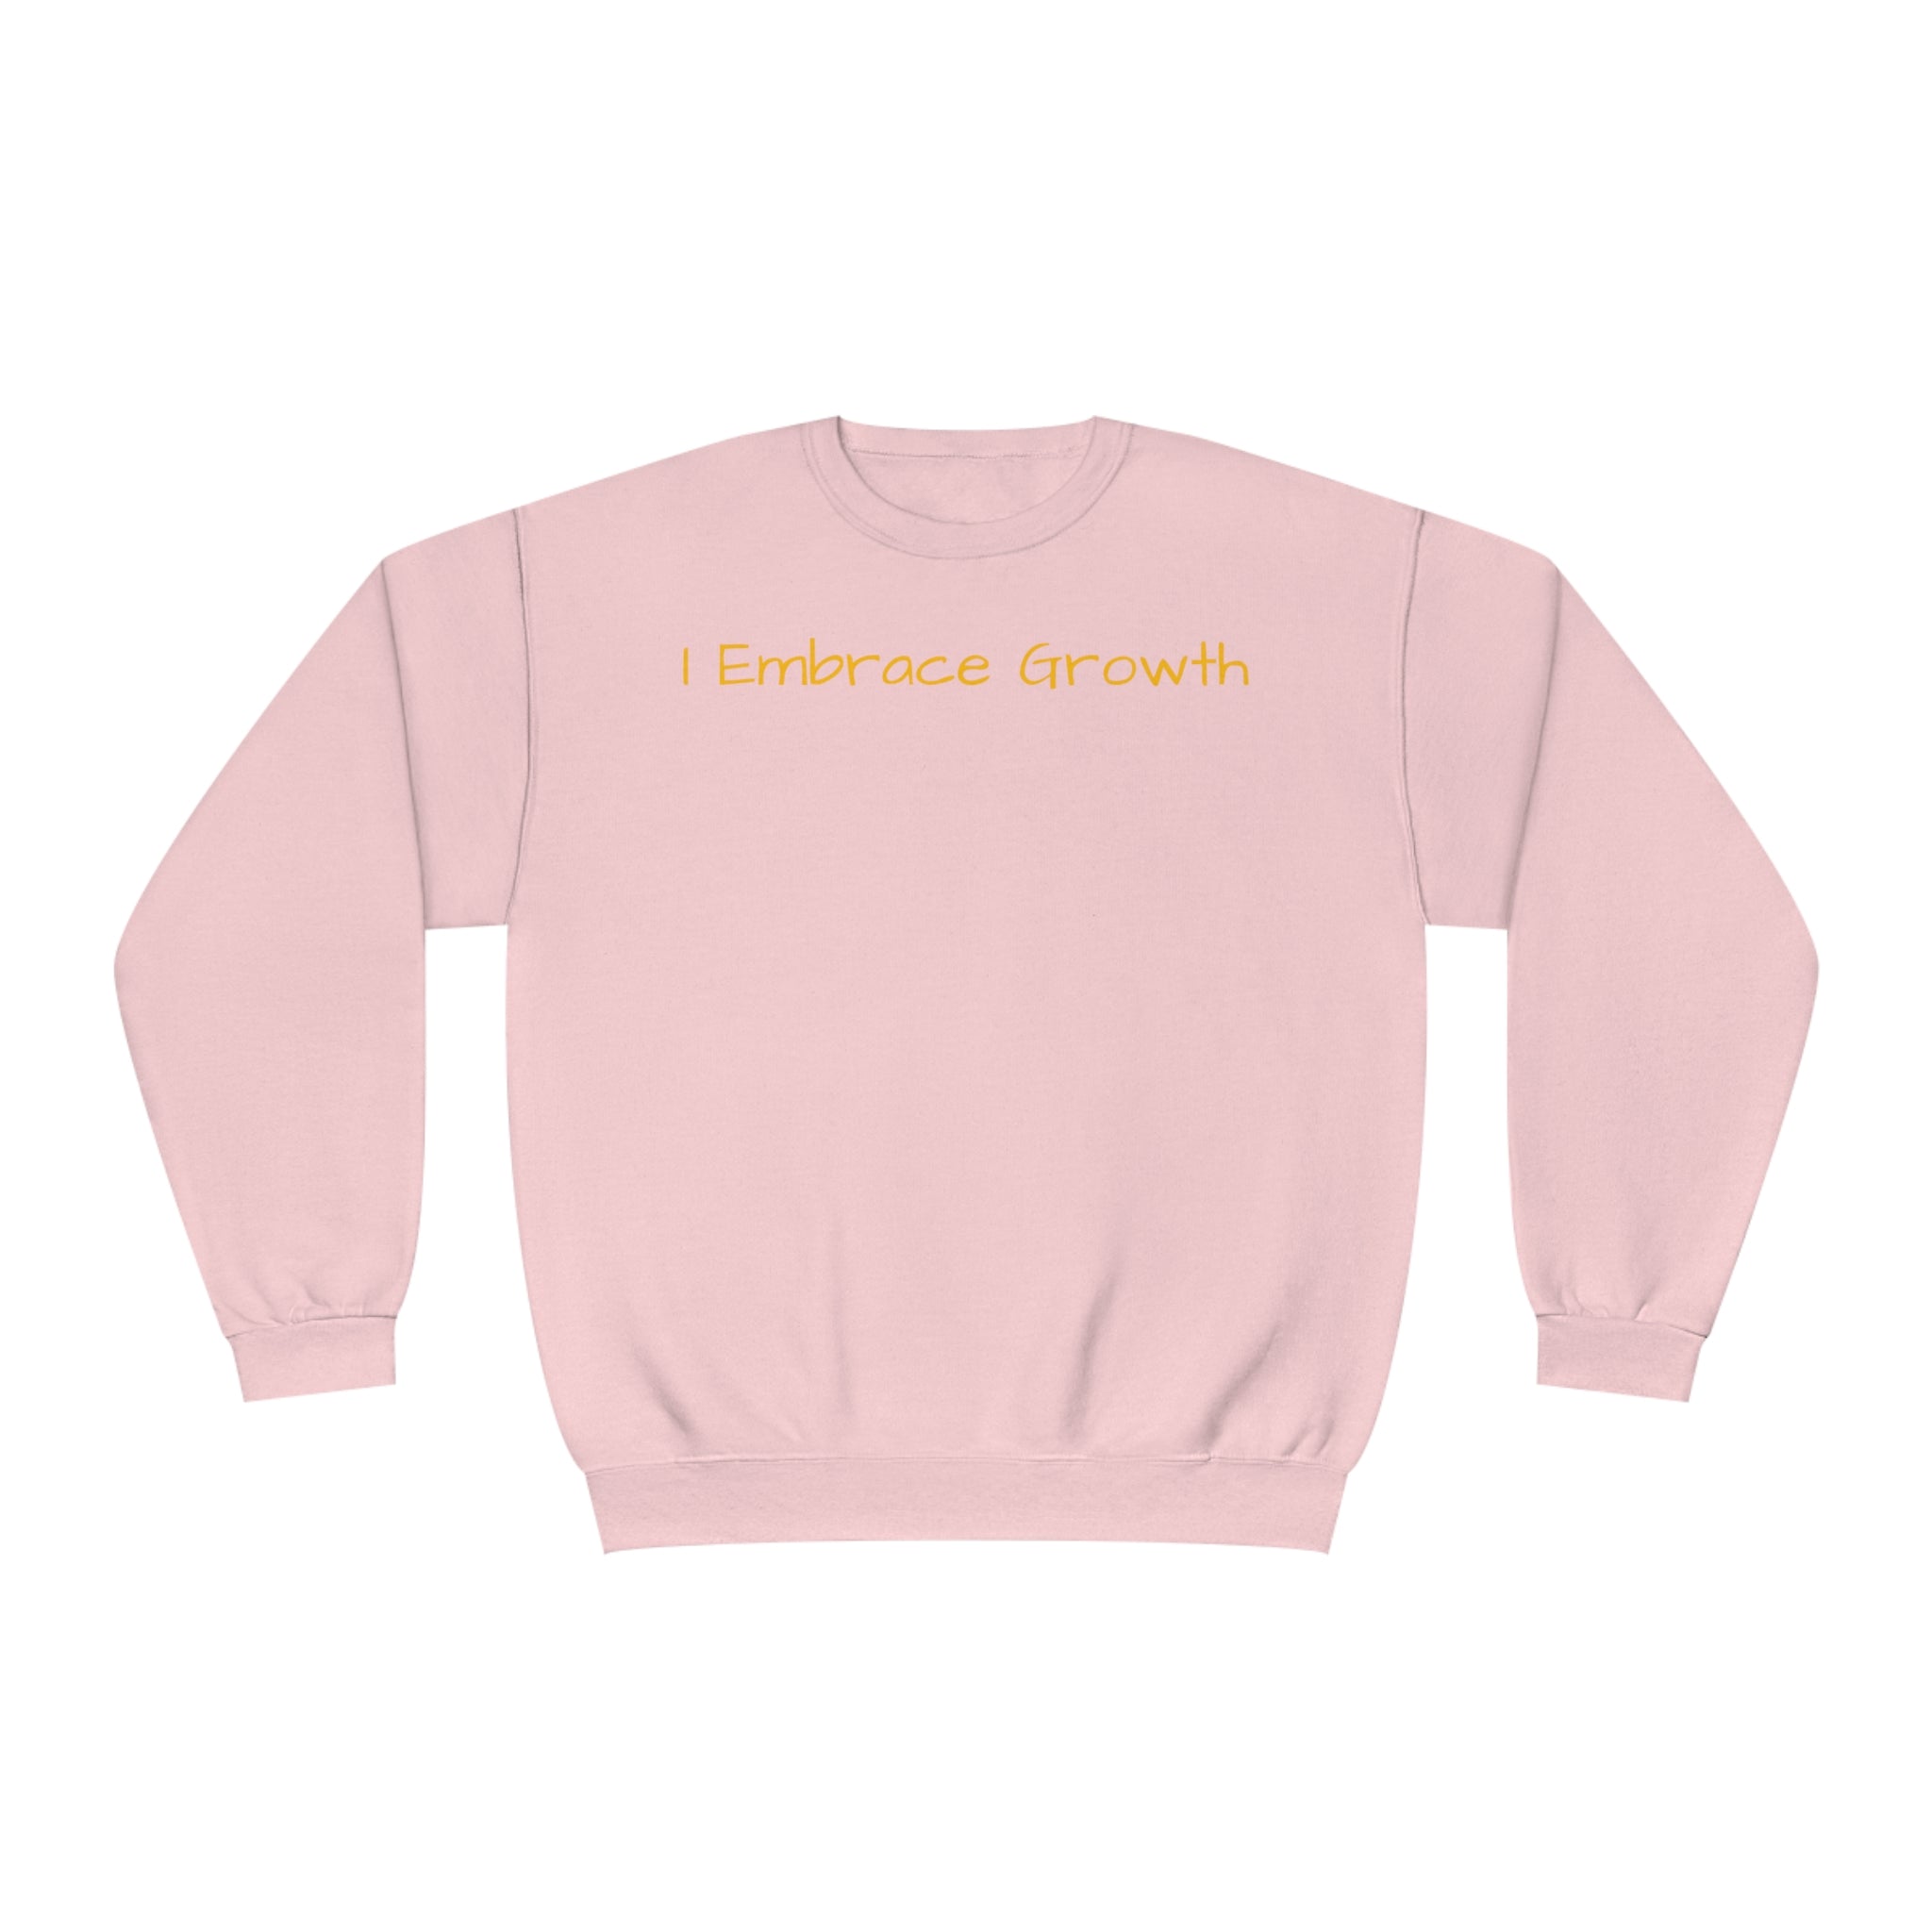 I Embrace Growth Fleece Sweatshirt: Comfort & Style Sandstone Comfy Sweater Cozy Sweatshirt Crewneck Sweatshirt Fleece Pullover Graphic Sweatshirt Men's Sweatshirt Streatwear Sweatshirt Warm Outerwear Women's Sweatshirt Sweatshirt 518202022352670895_2048 Printify